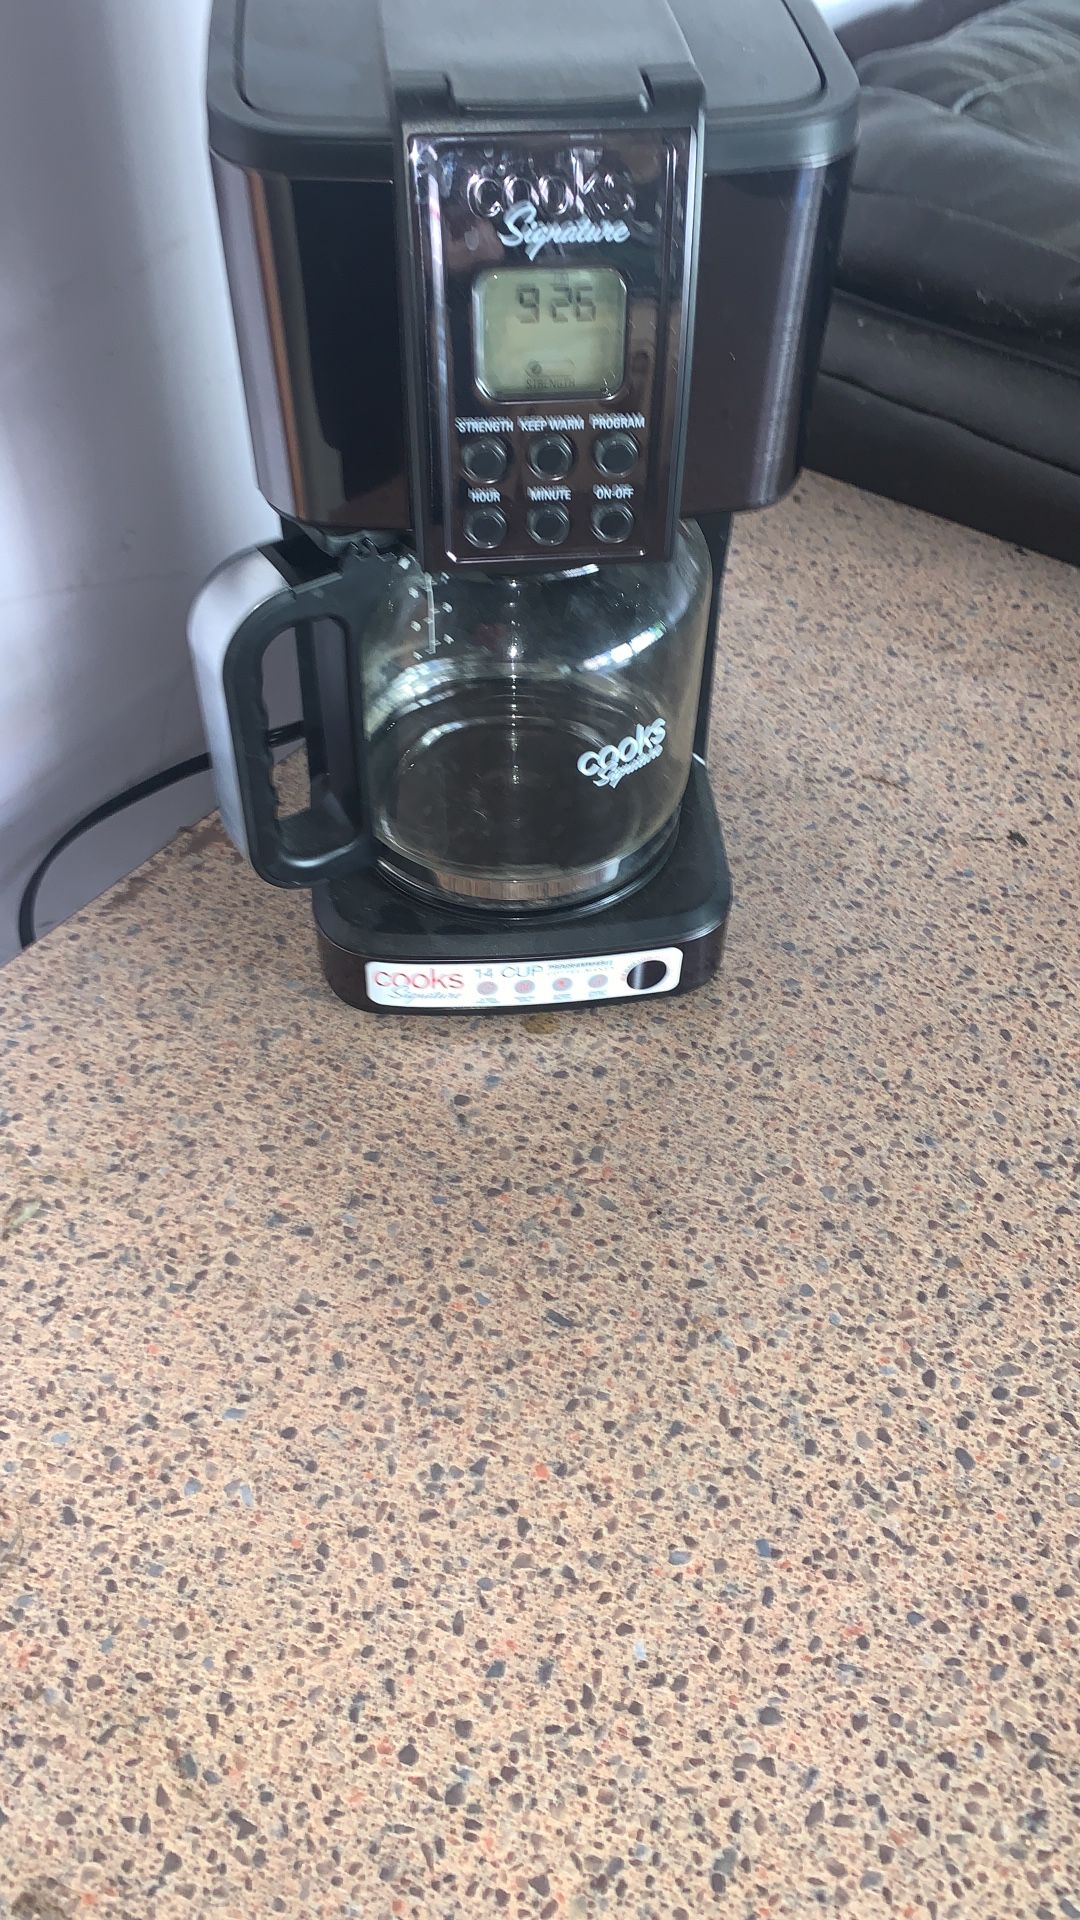 Used coffee machine 15$